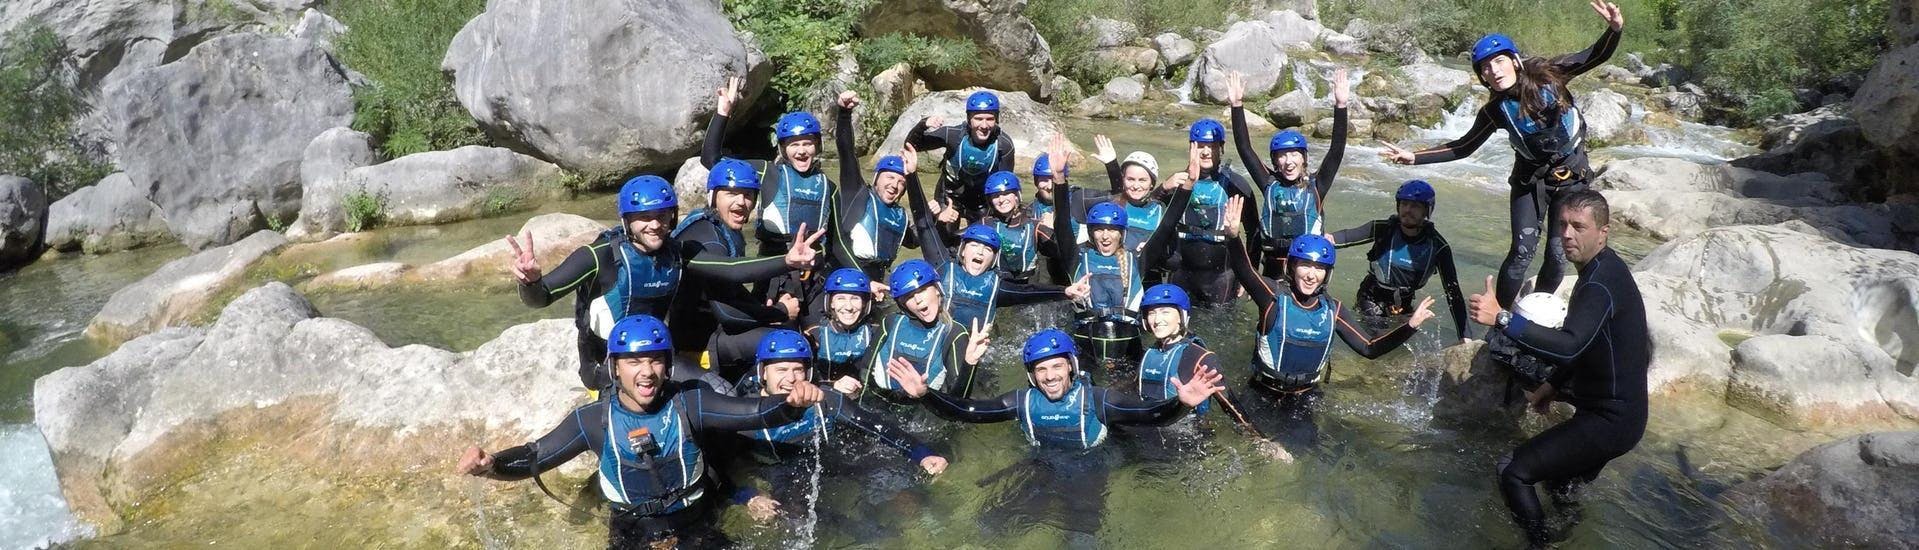 Les amis sont Canyoning dans la rivière Cetina près d'Omiš - Circuit de base avec l'agence de voyage Dalmare Omiš.